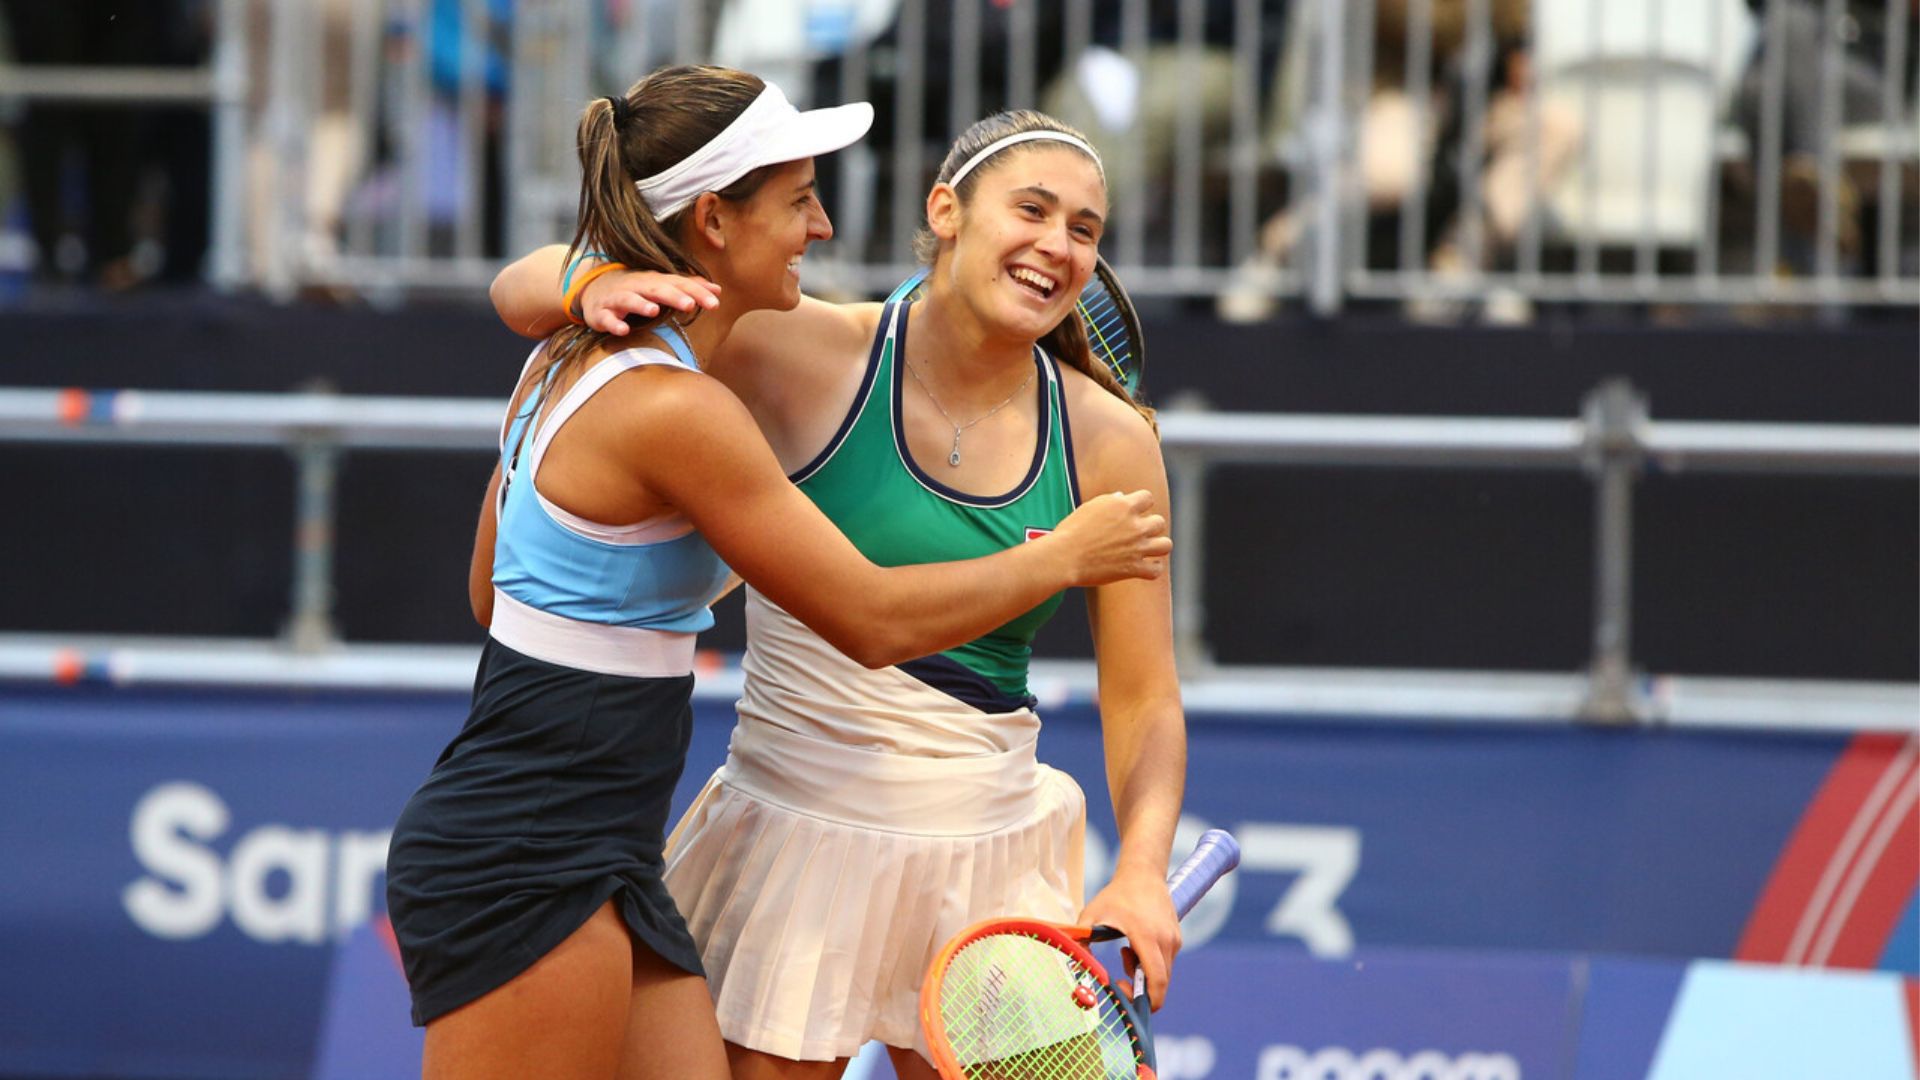 Tenis: Argentina conquistó el bronce en el dobles femenino tras vencer a Chile